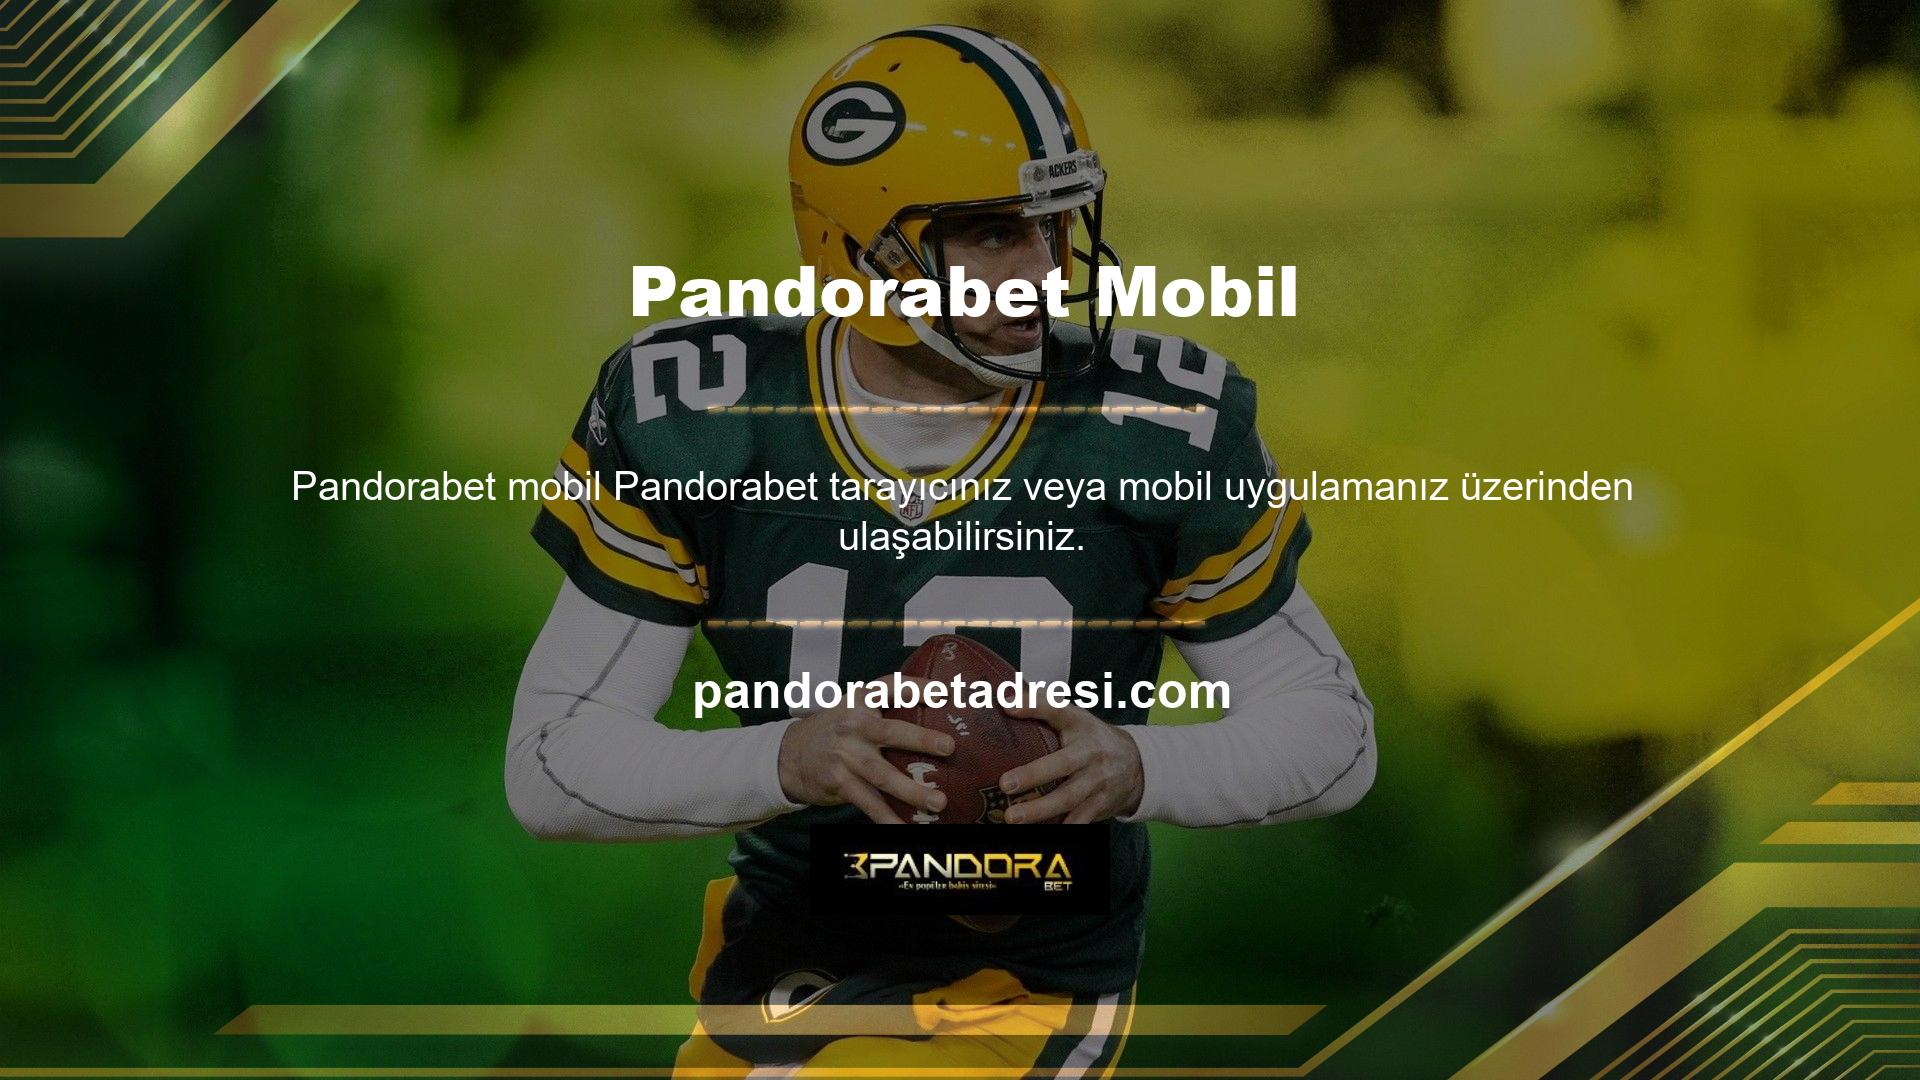 Oyuncular genellikle hızlı ve kaliteli olan Pandorabet mobil giriş uygulamasını kullanıyor